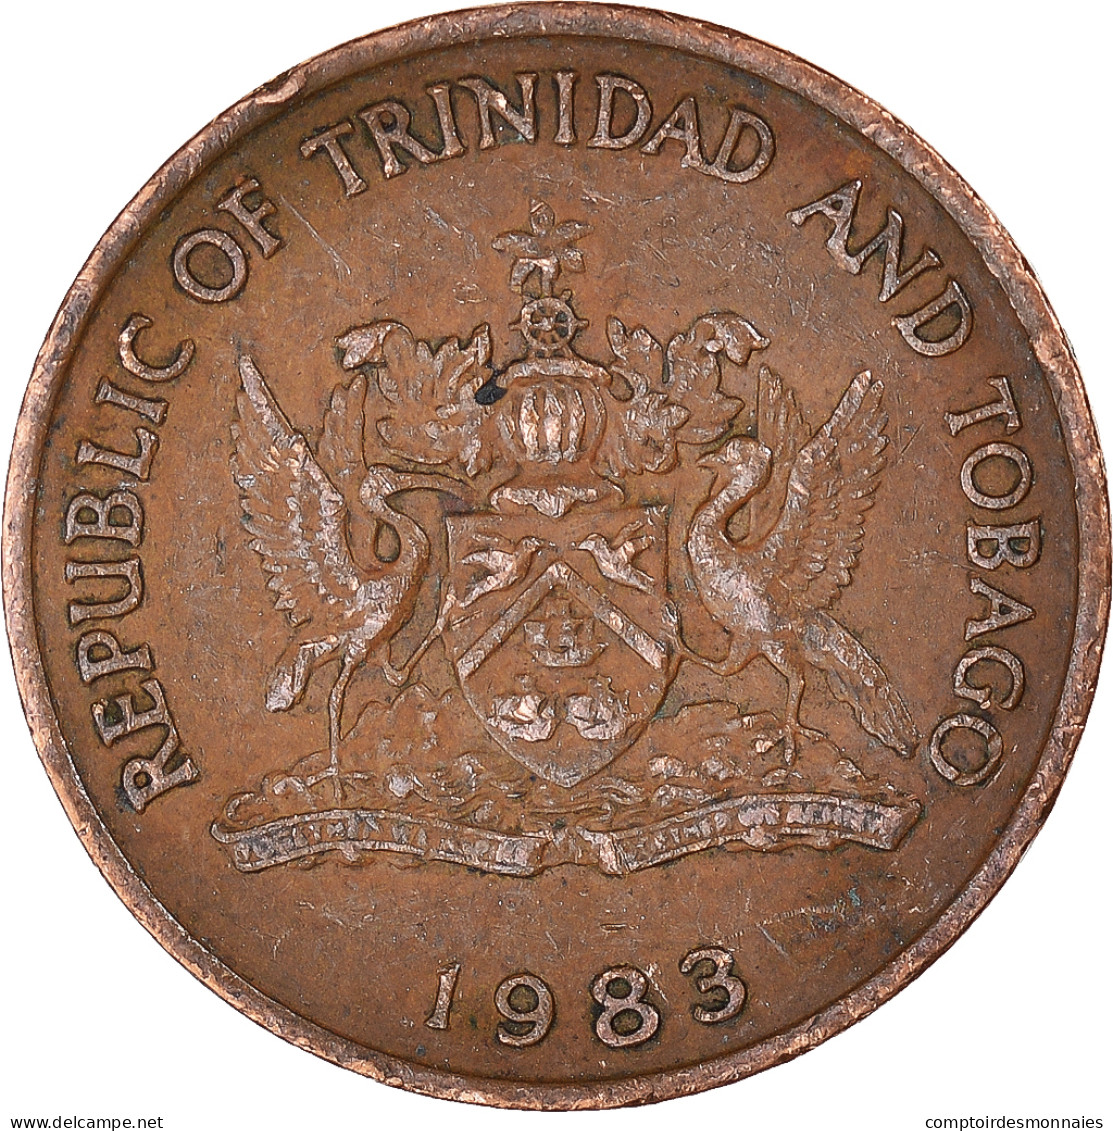 Monnaie, Trinité-et-Tobago, 5 Cents, 1983 - Trinité & Tobago